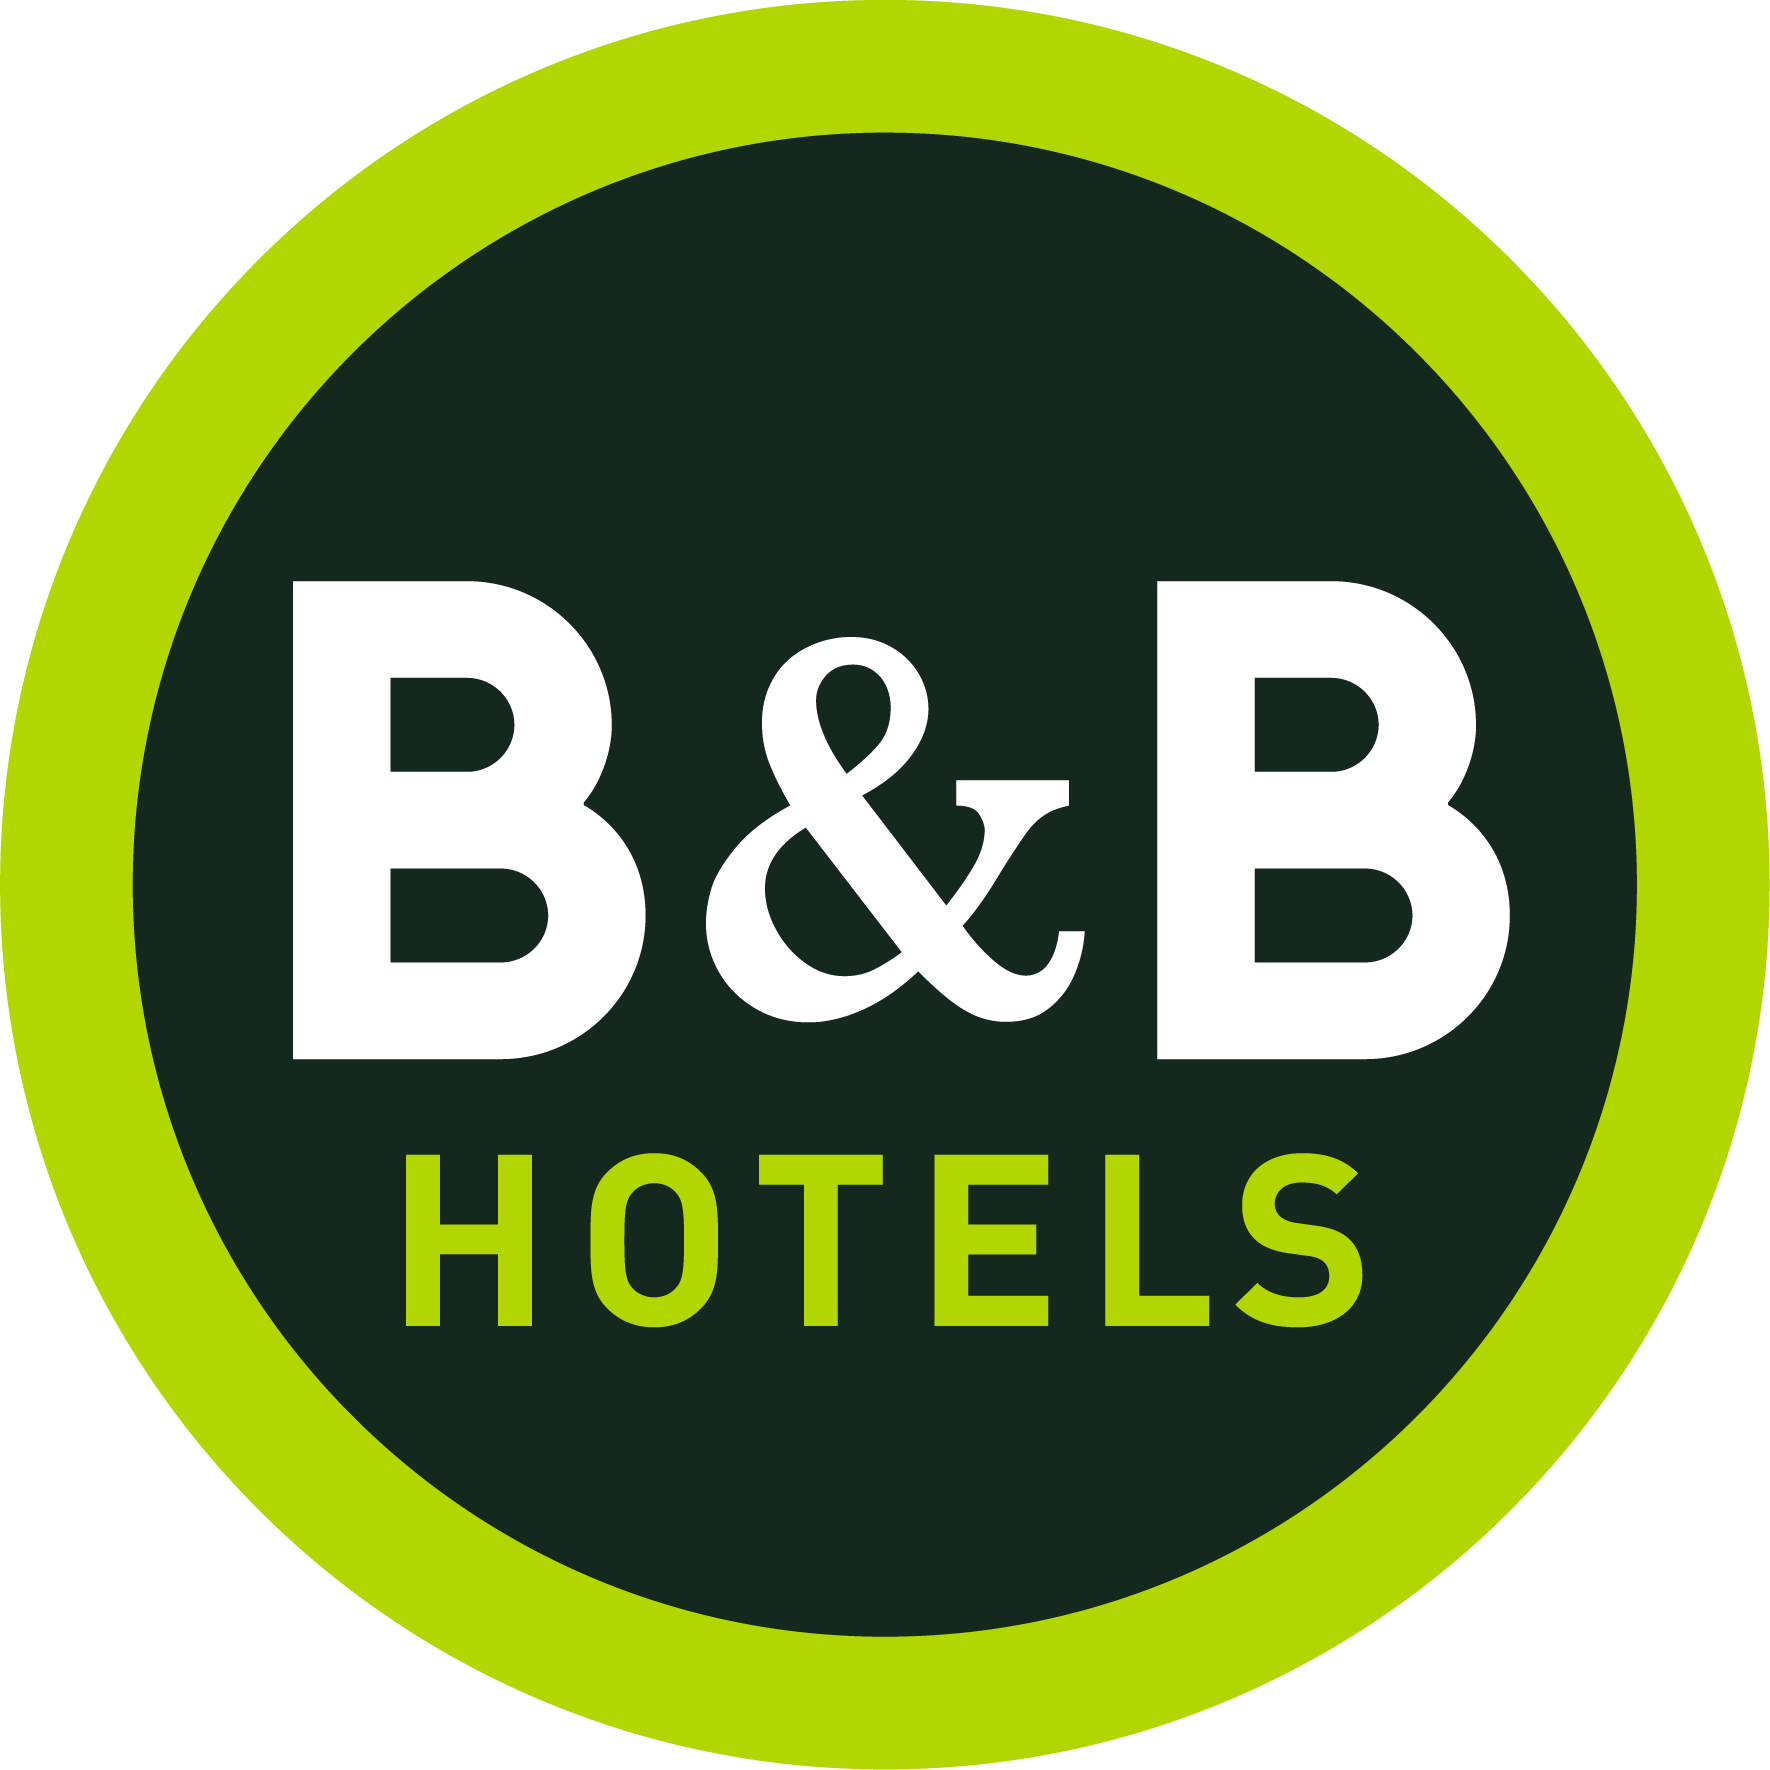 B&B HOTELS Germany GmbH - Kehl